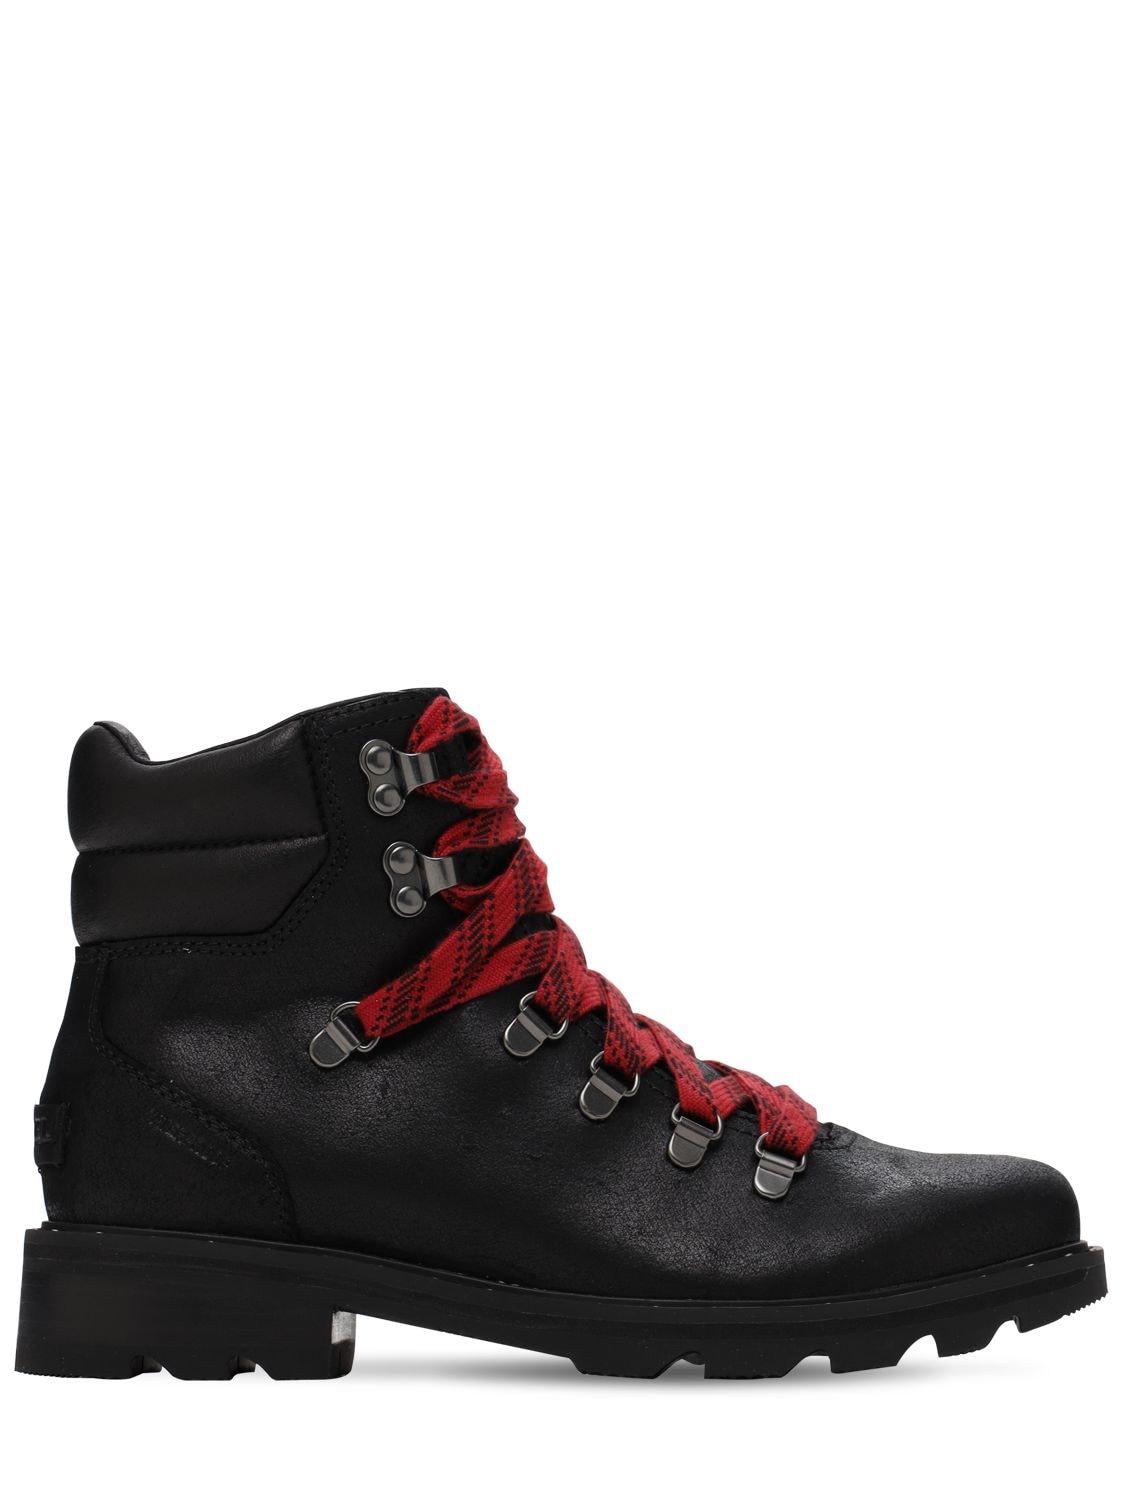 Sorel Lennox Hiker Waterproof Leather Boots in Black | Lyst